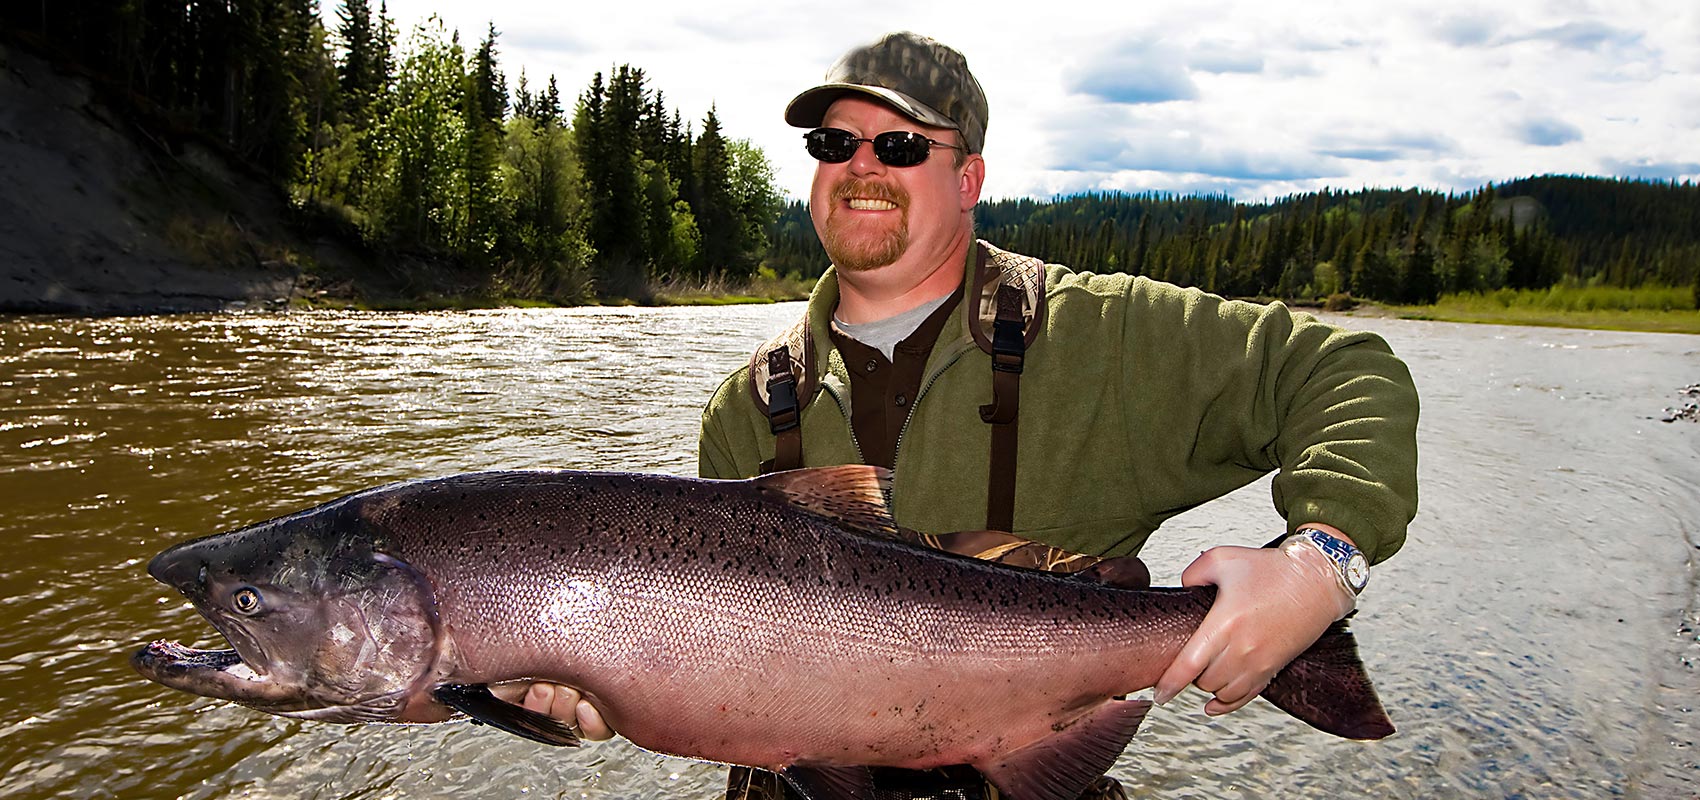 Man holding large salmon